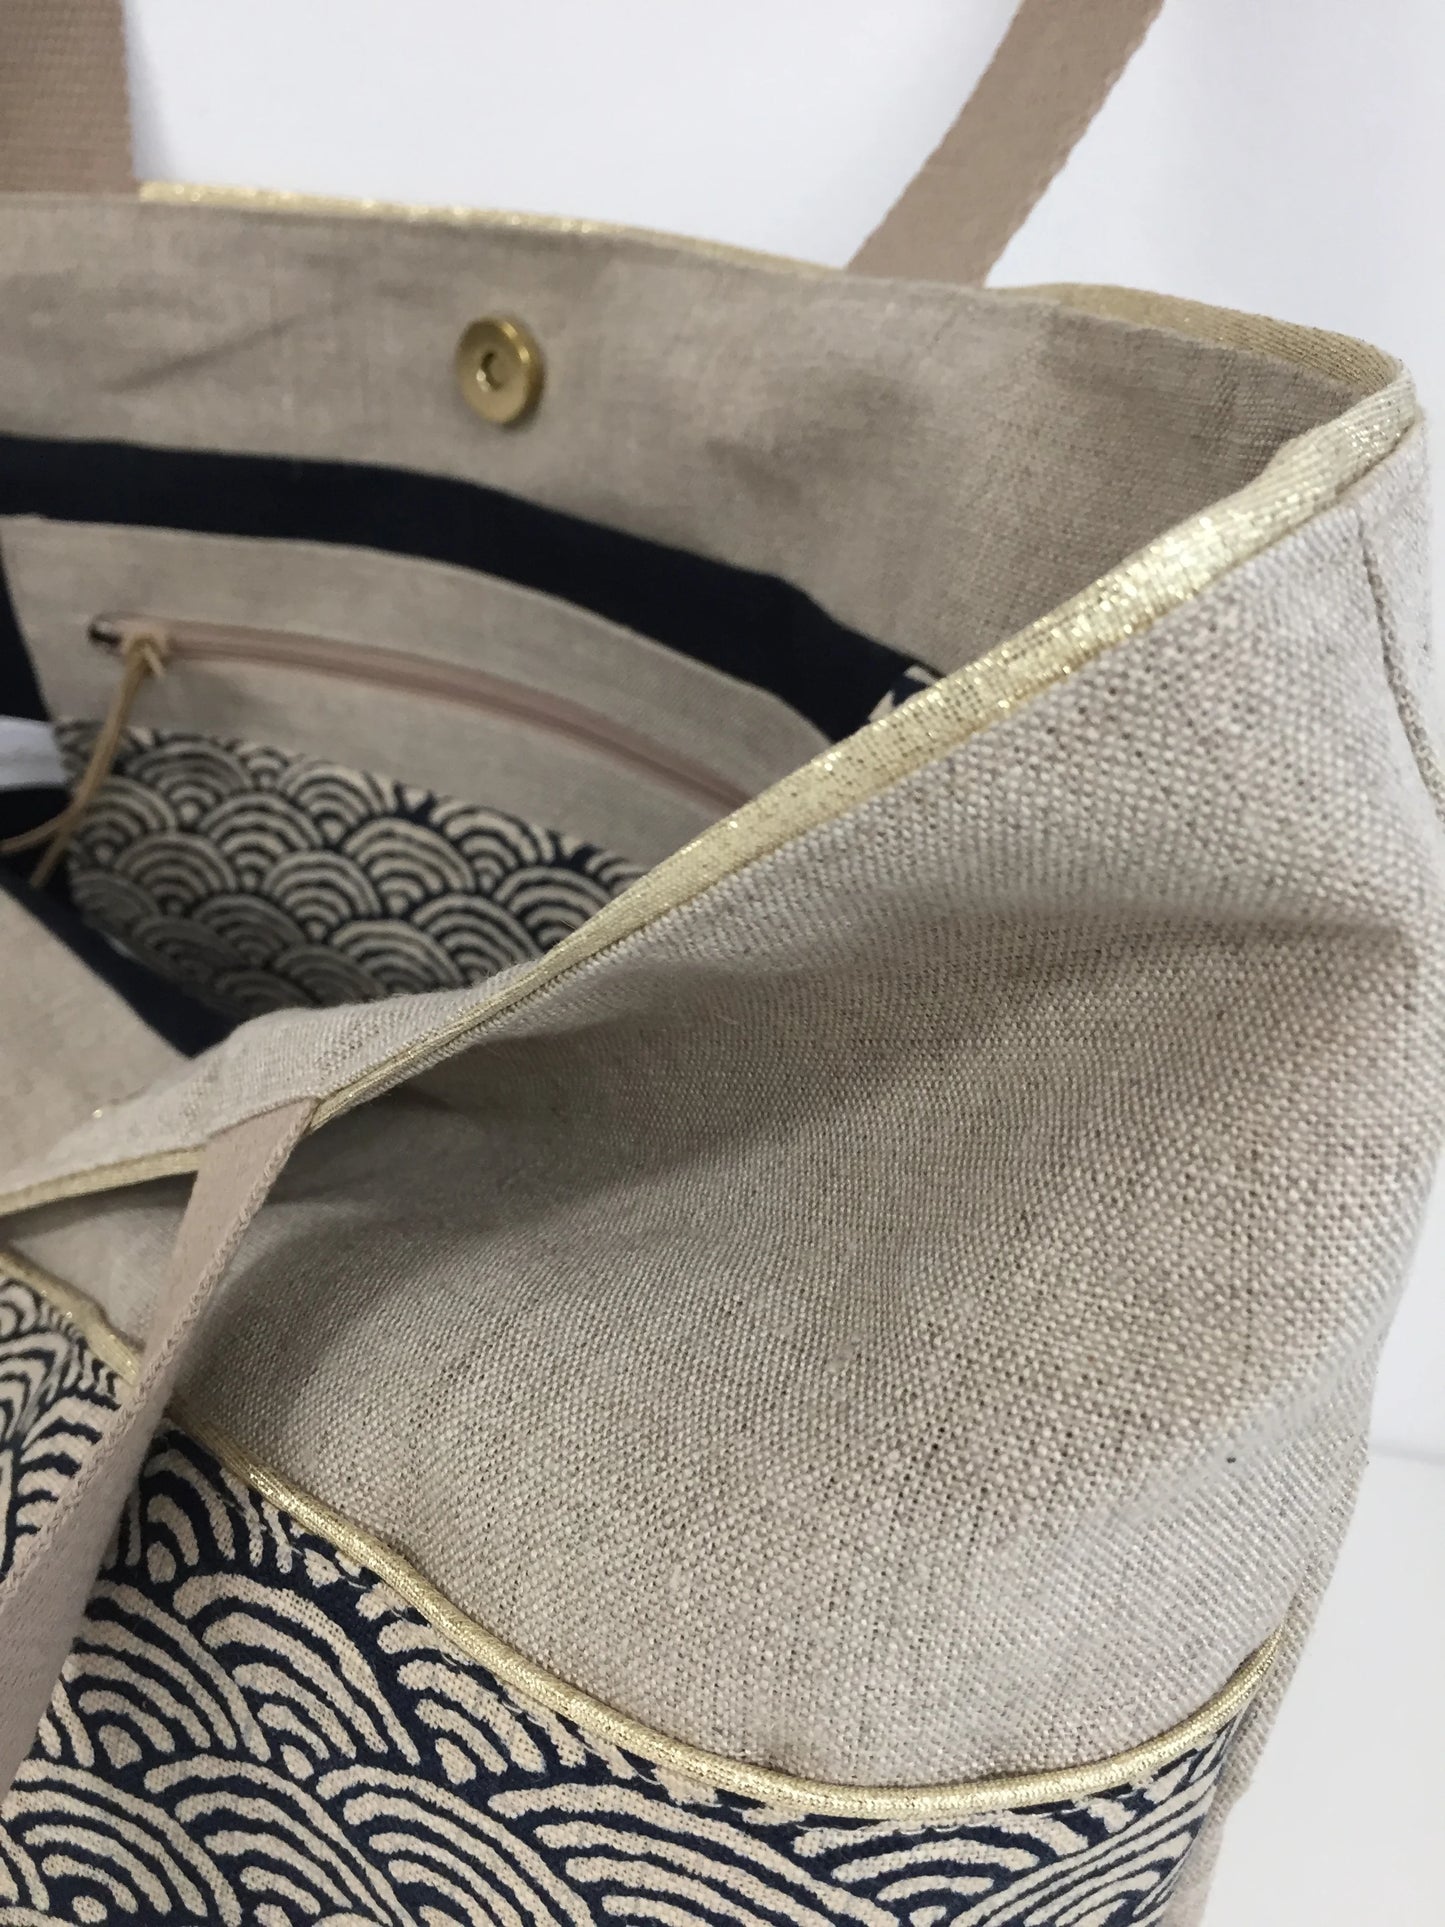 Vue détaillée du liseré doré du sac cabas Isa en lin et tissu japonais bleu nuit, beige et doré.